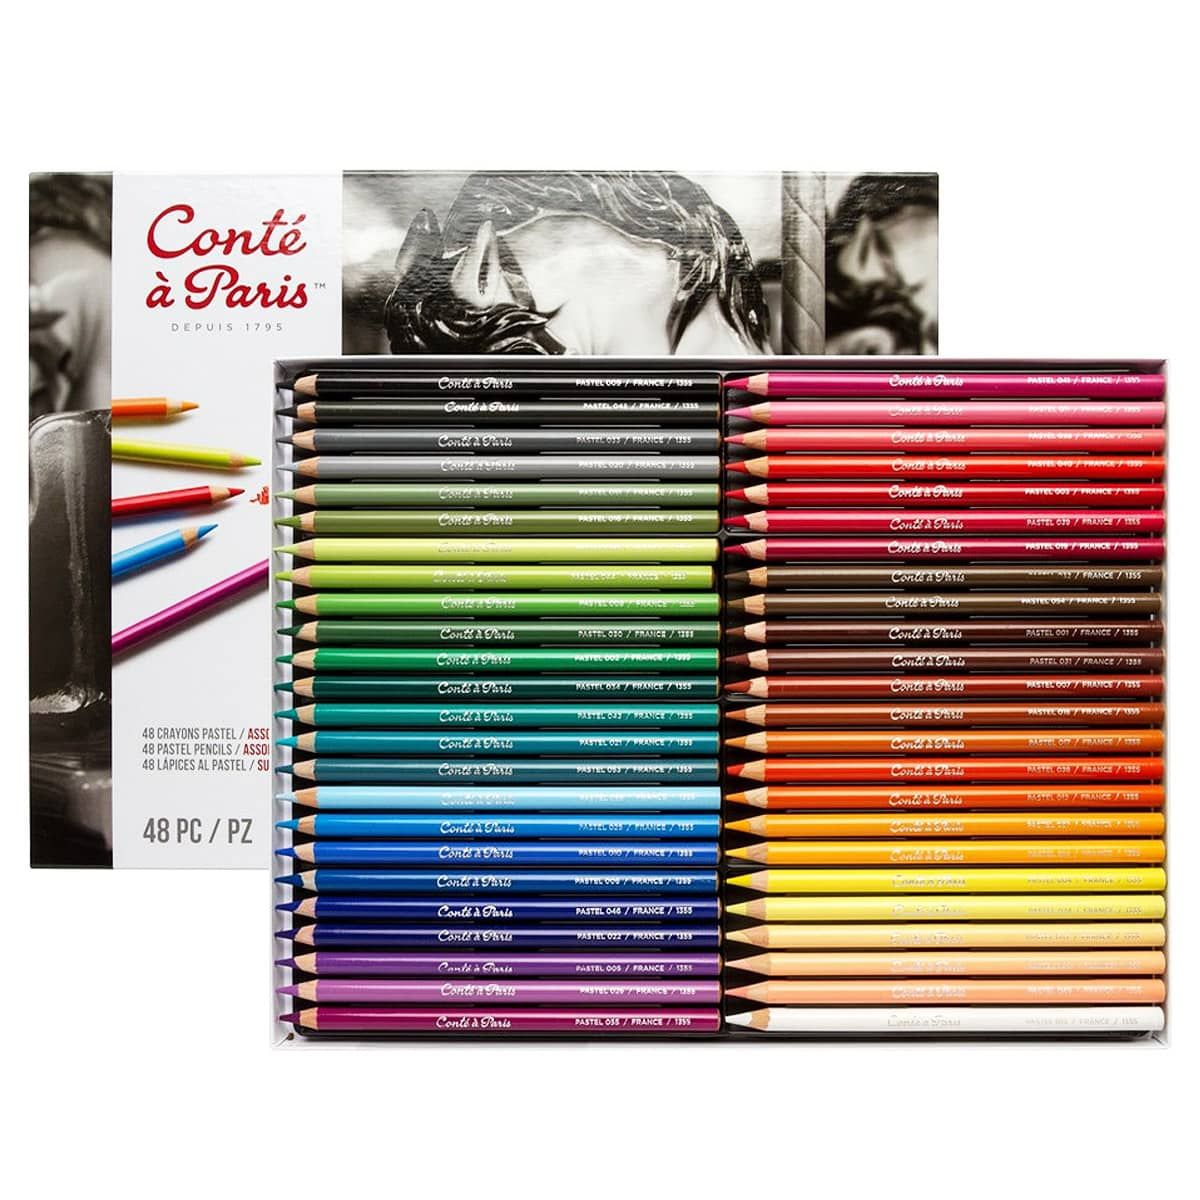 https://www.jerrysartarama.com/media/catalog/product/cache/ecb49a32eeb5603594b082bd5fe65733/c/o/conte-a-paris-pastel-pencil-set-48-assorted-colors-ls-11458_1.jpg